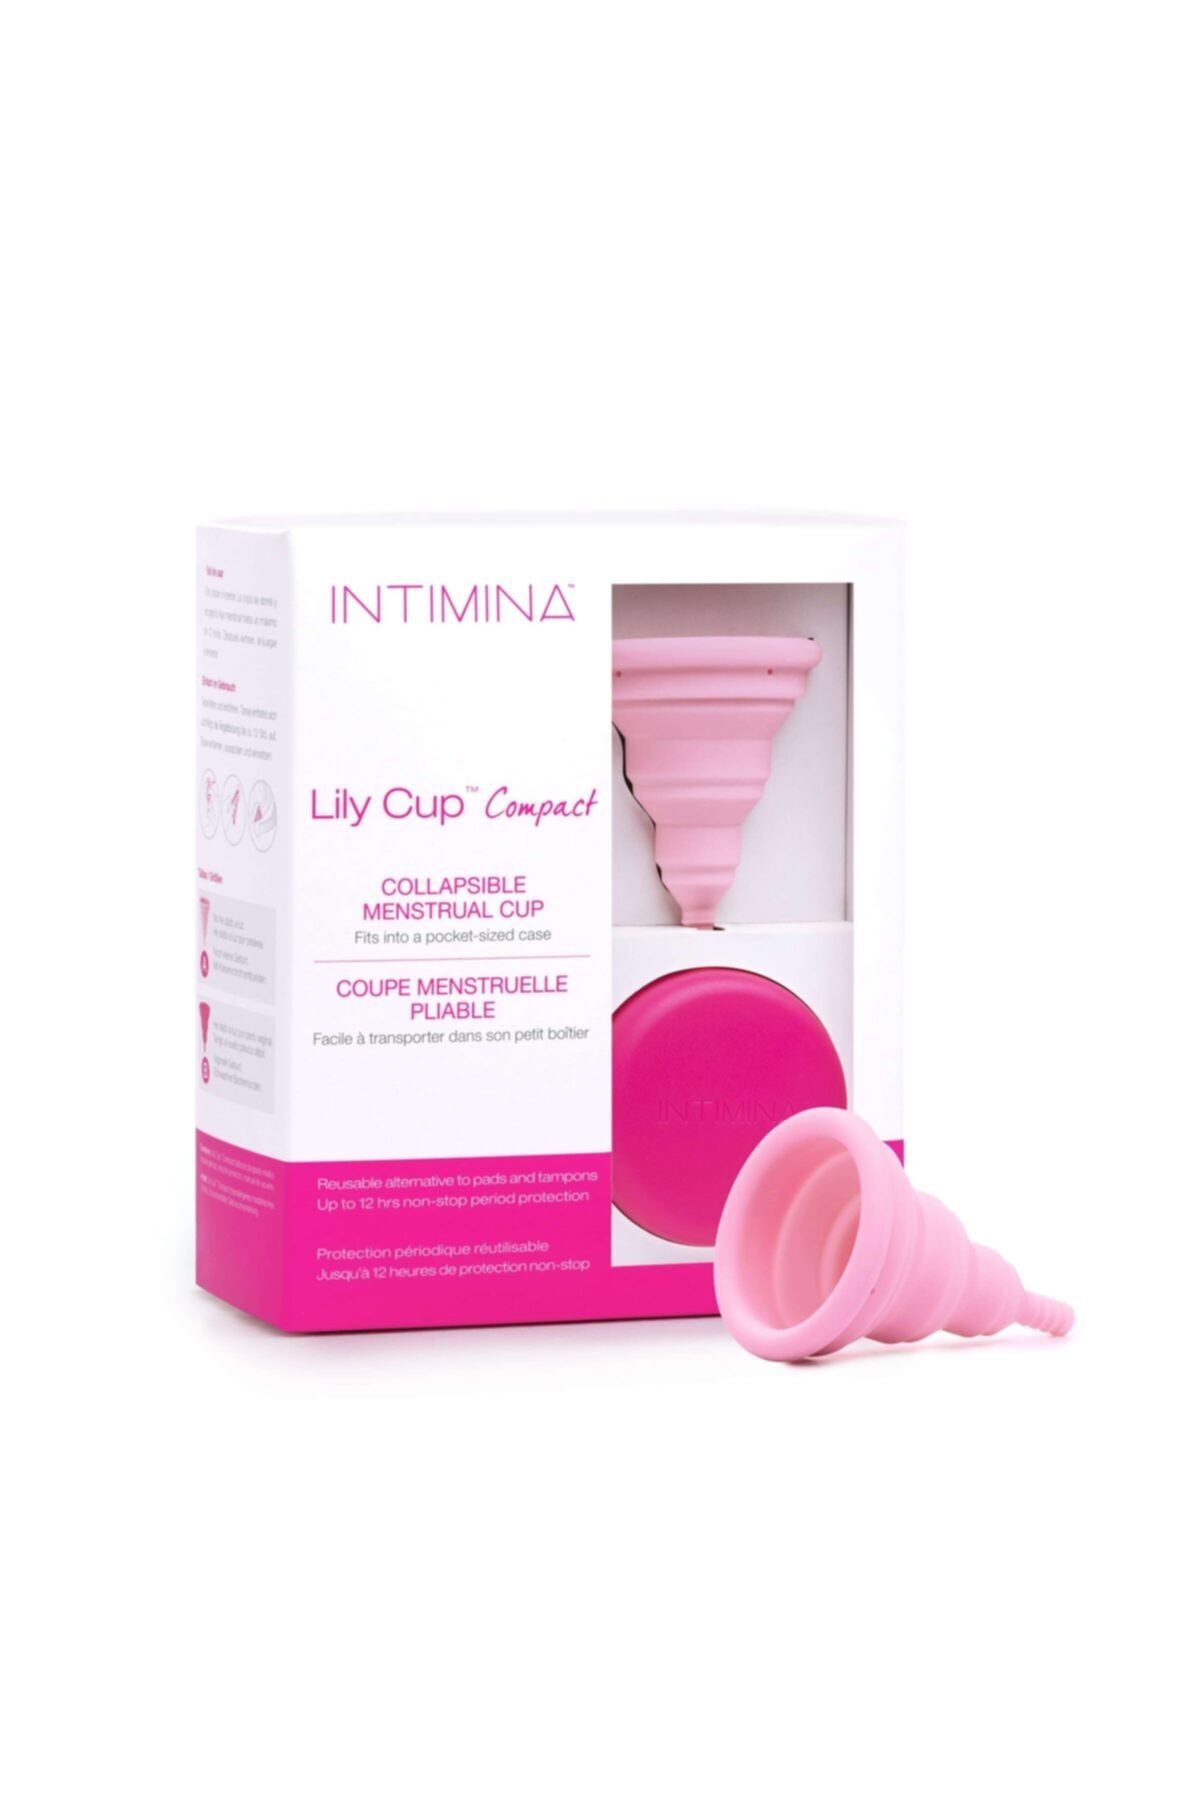 INTIMINA Lily Cup™ Compact-adet Kabı-menstrual Kap-size A